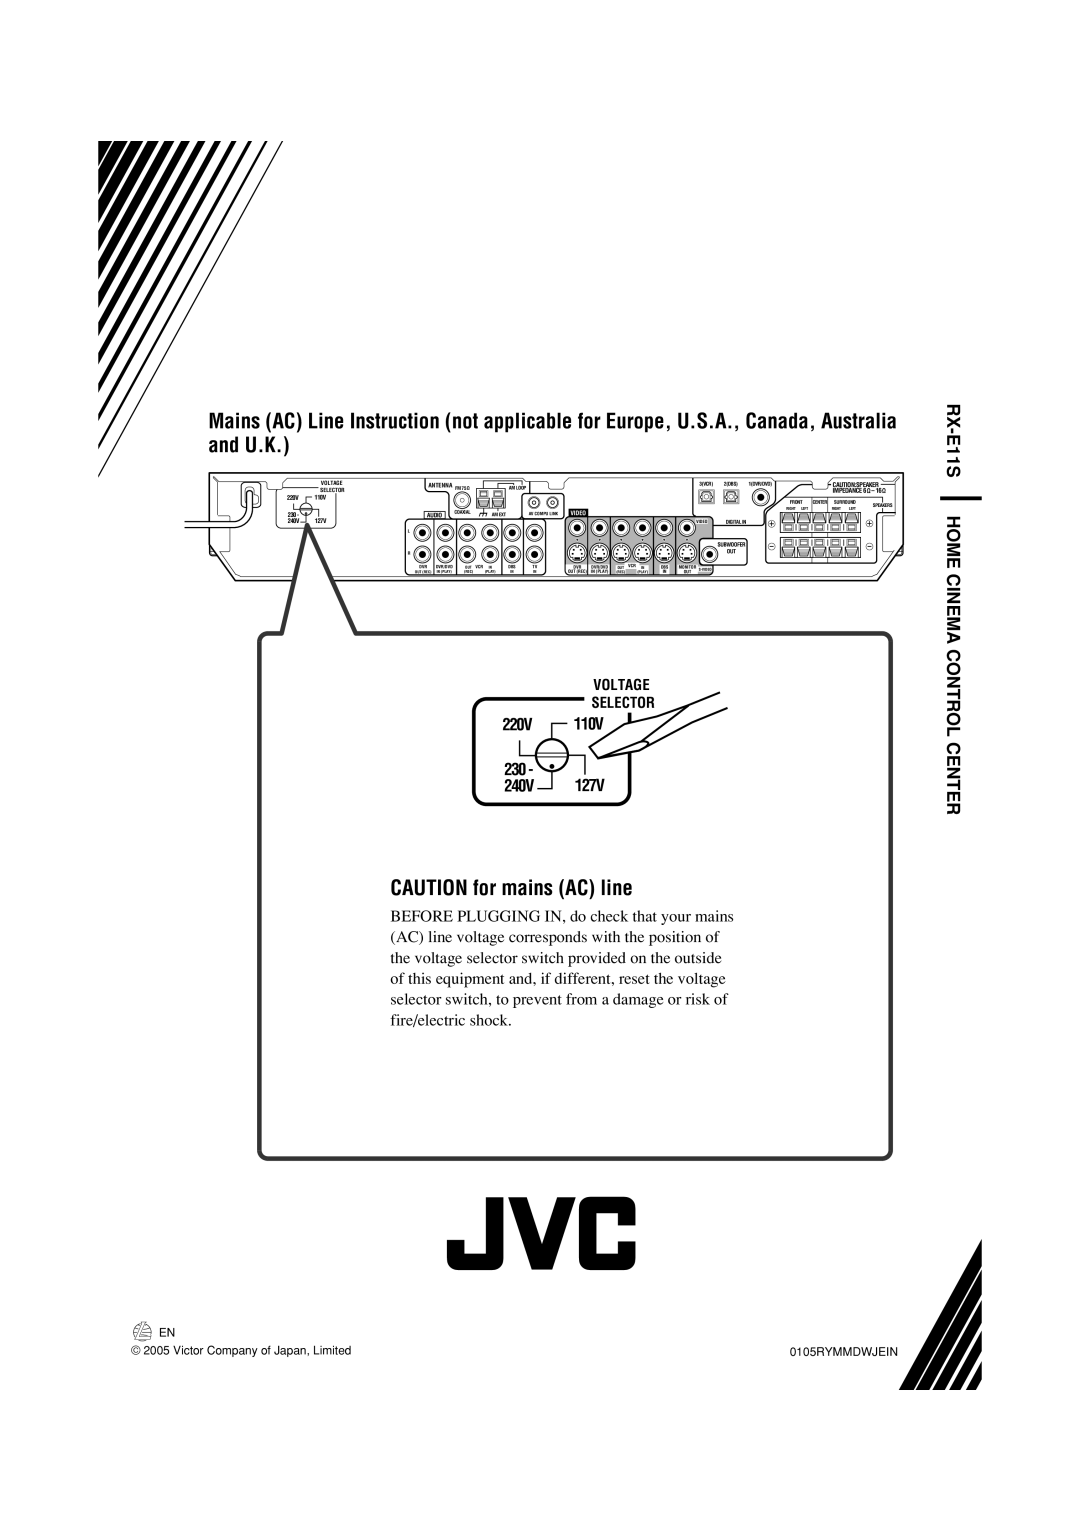 JVC manual CAUTION for mains AC line, RX-E11S HOME CINEMA CONTROL CENTER, 220V 230 240V 